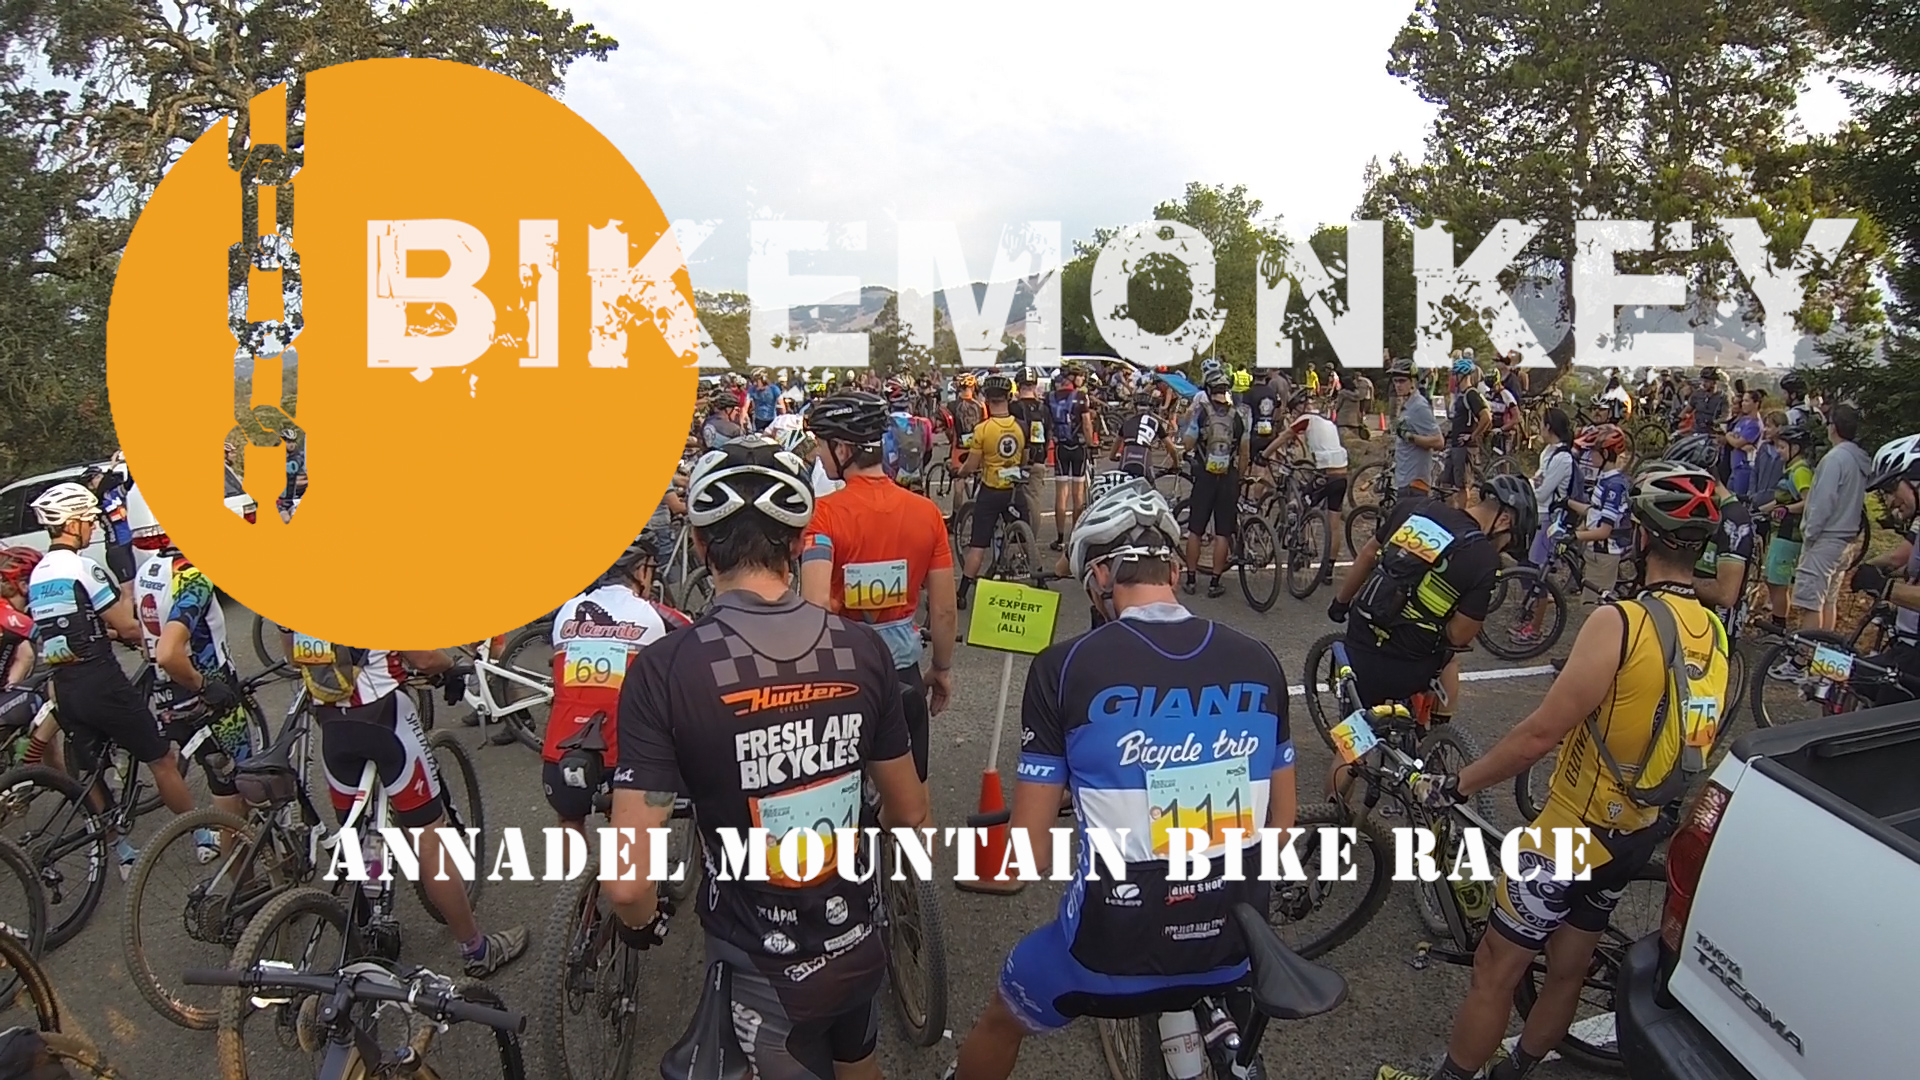 2015 Annadel Mountain Bike Race